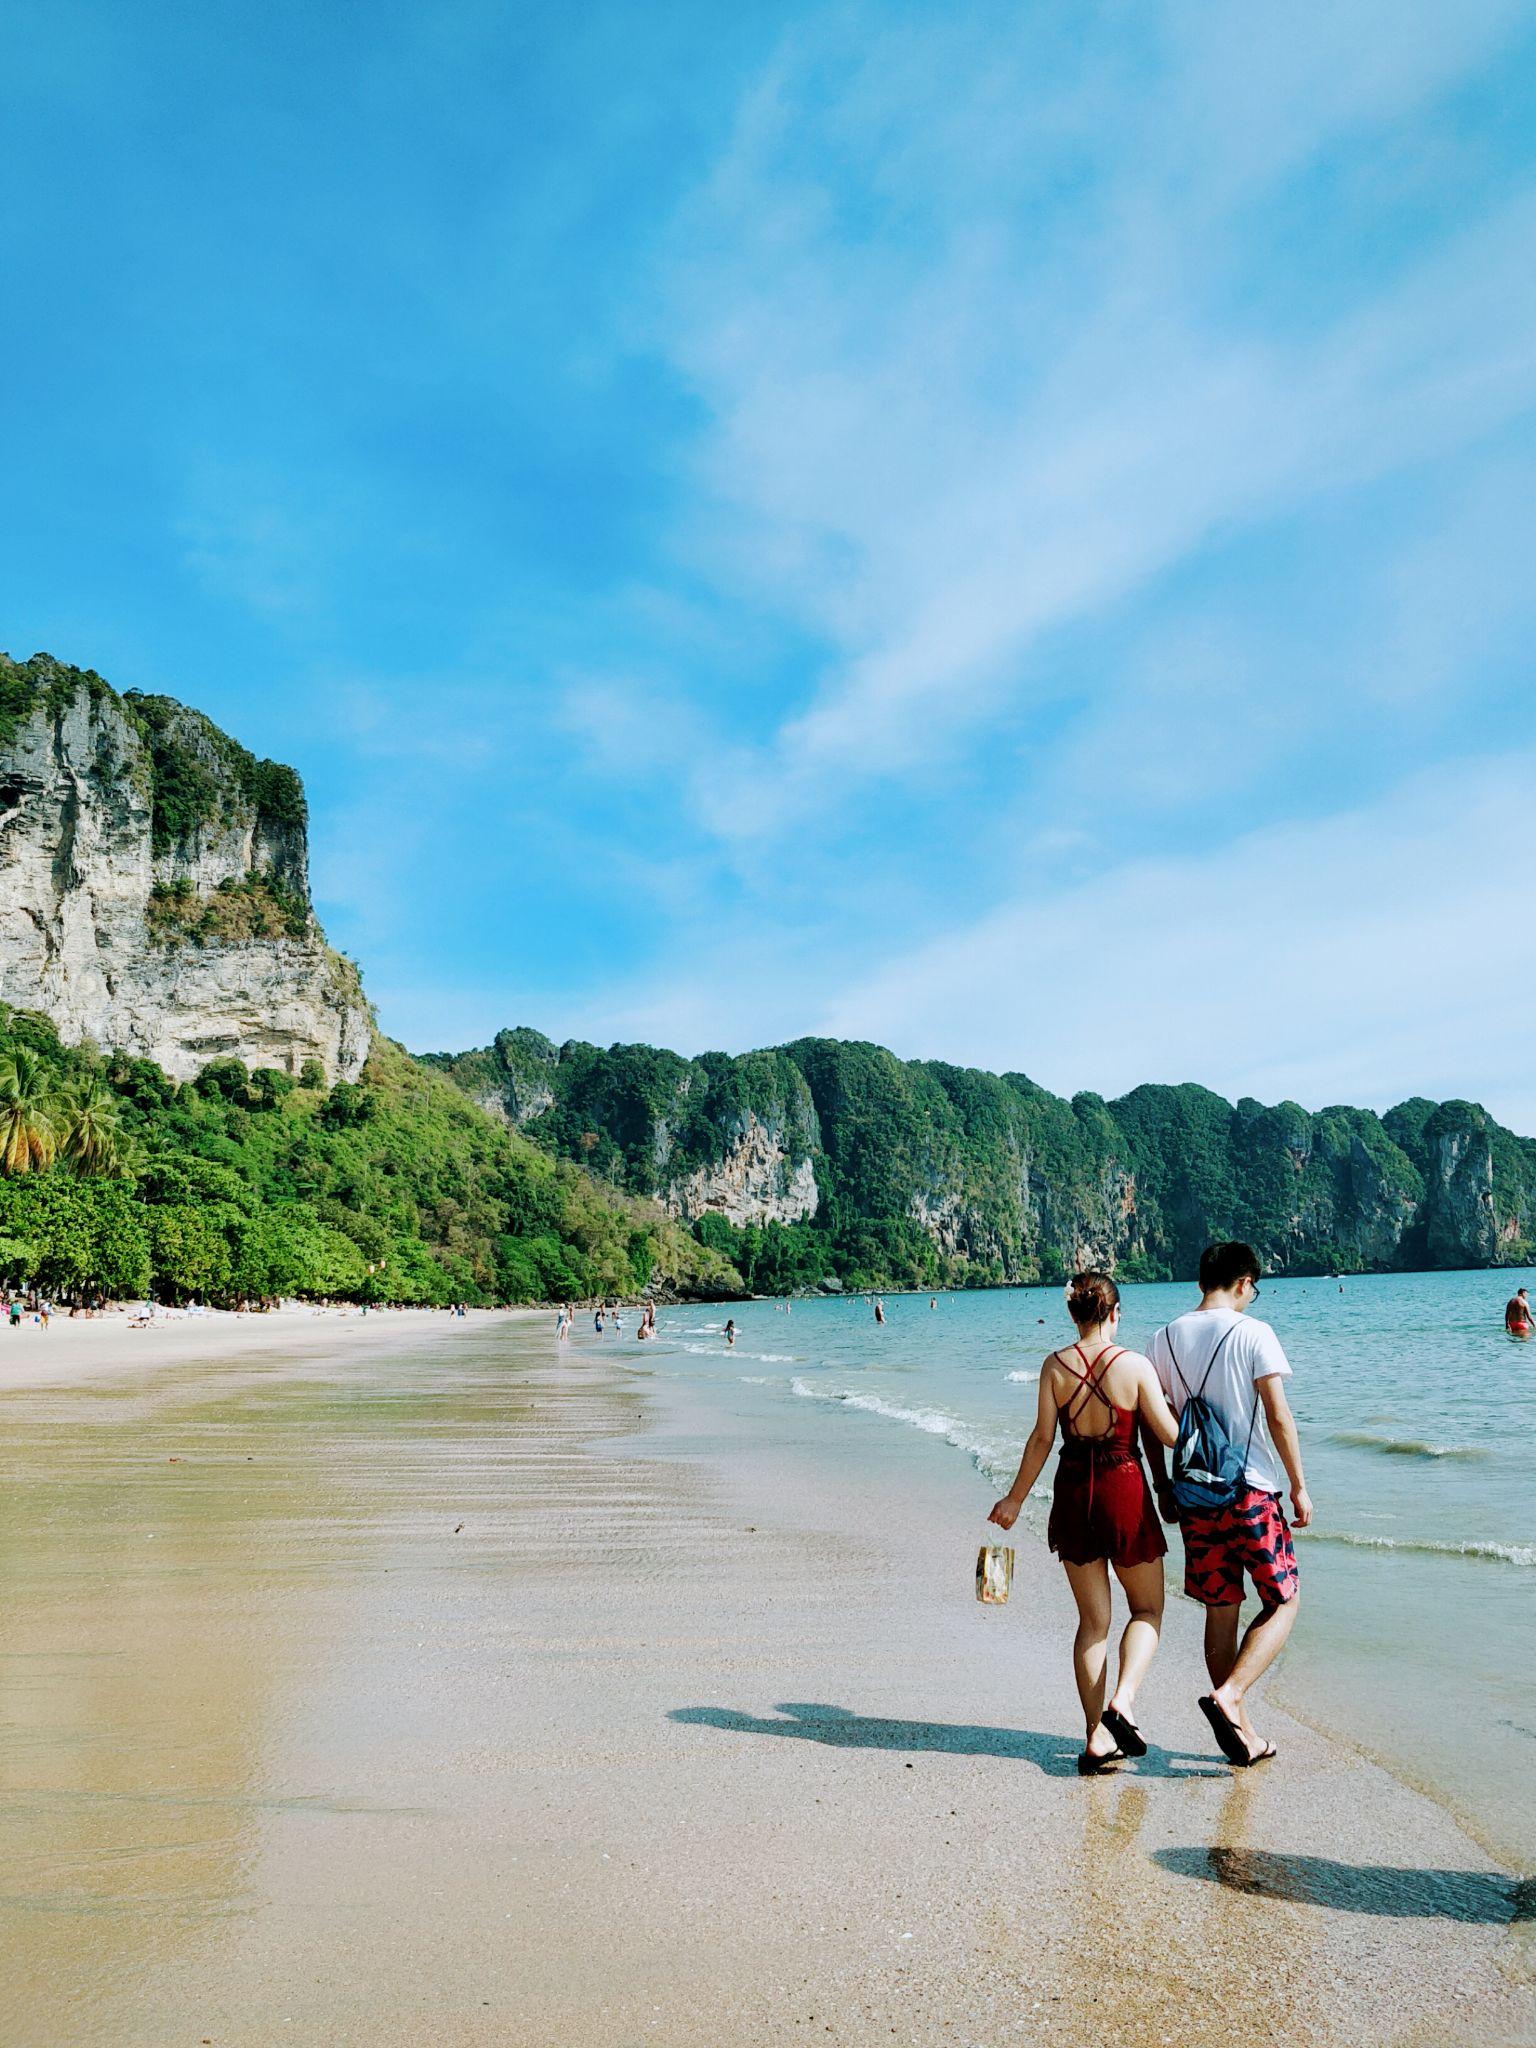 泰国旅游7天,一个人要多少钱?